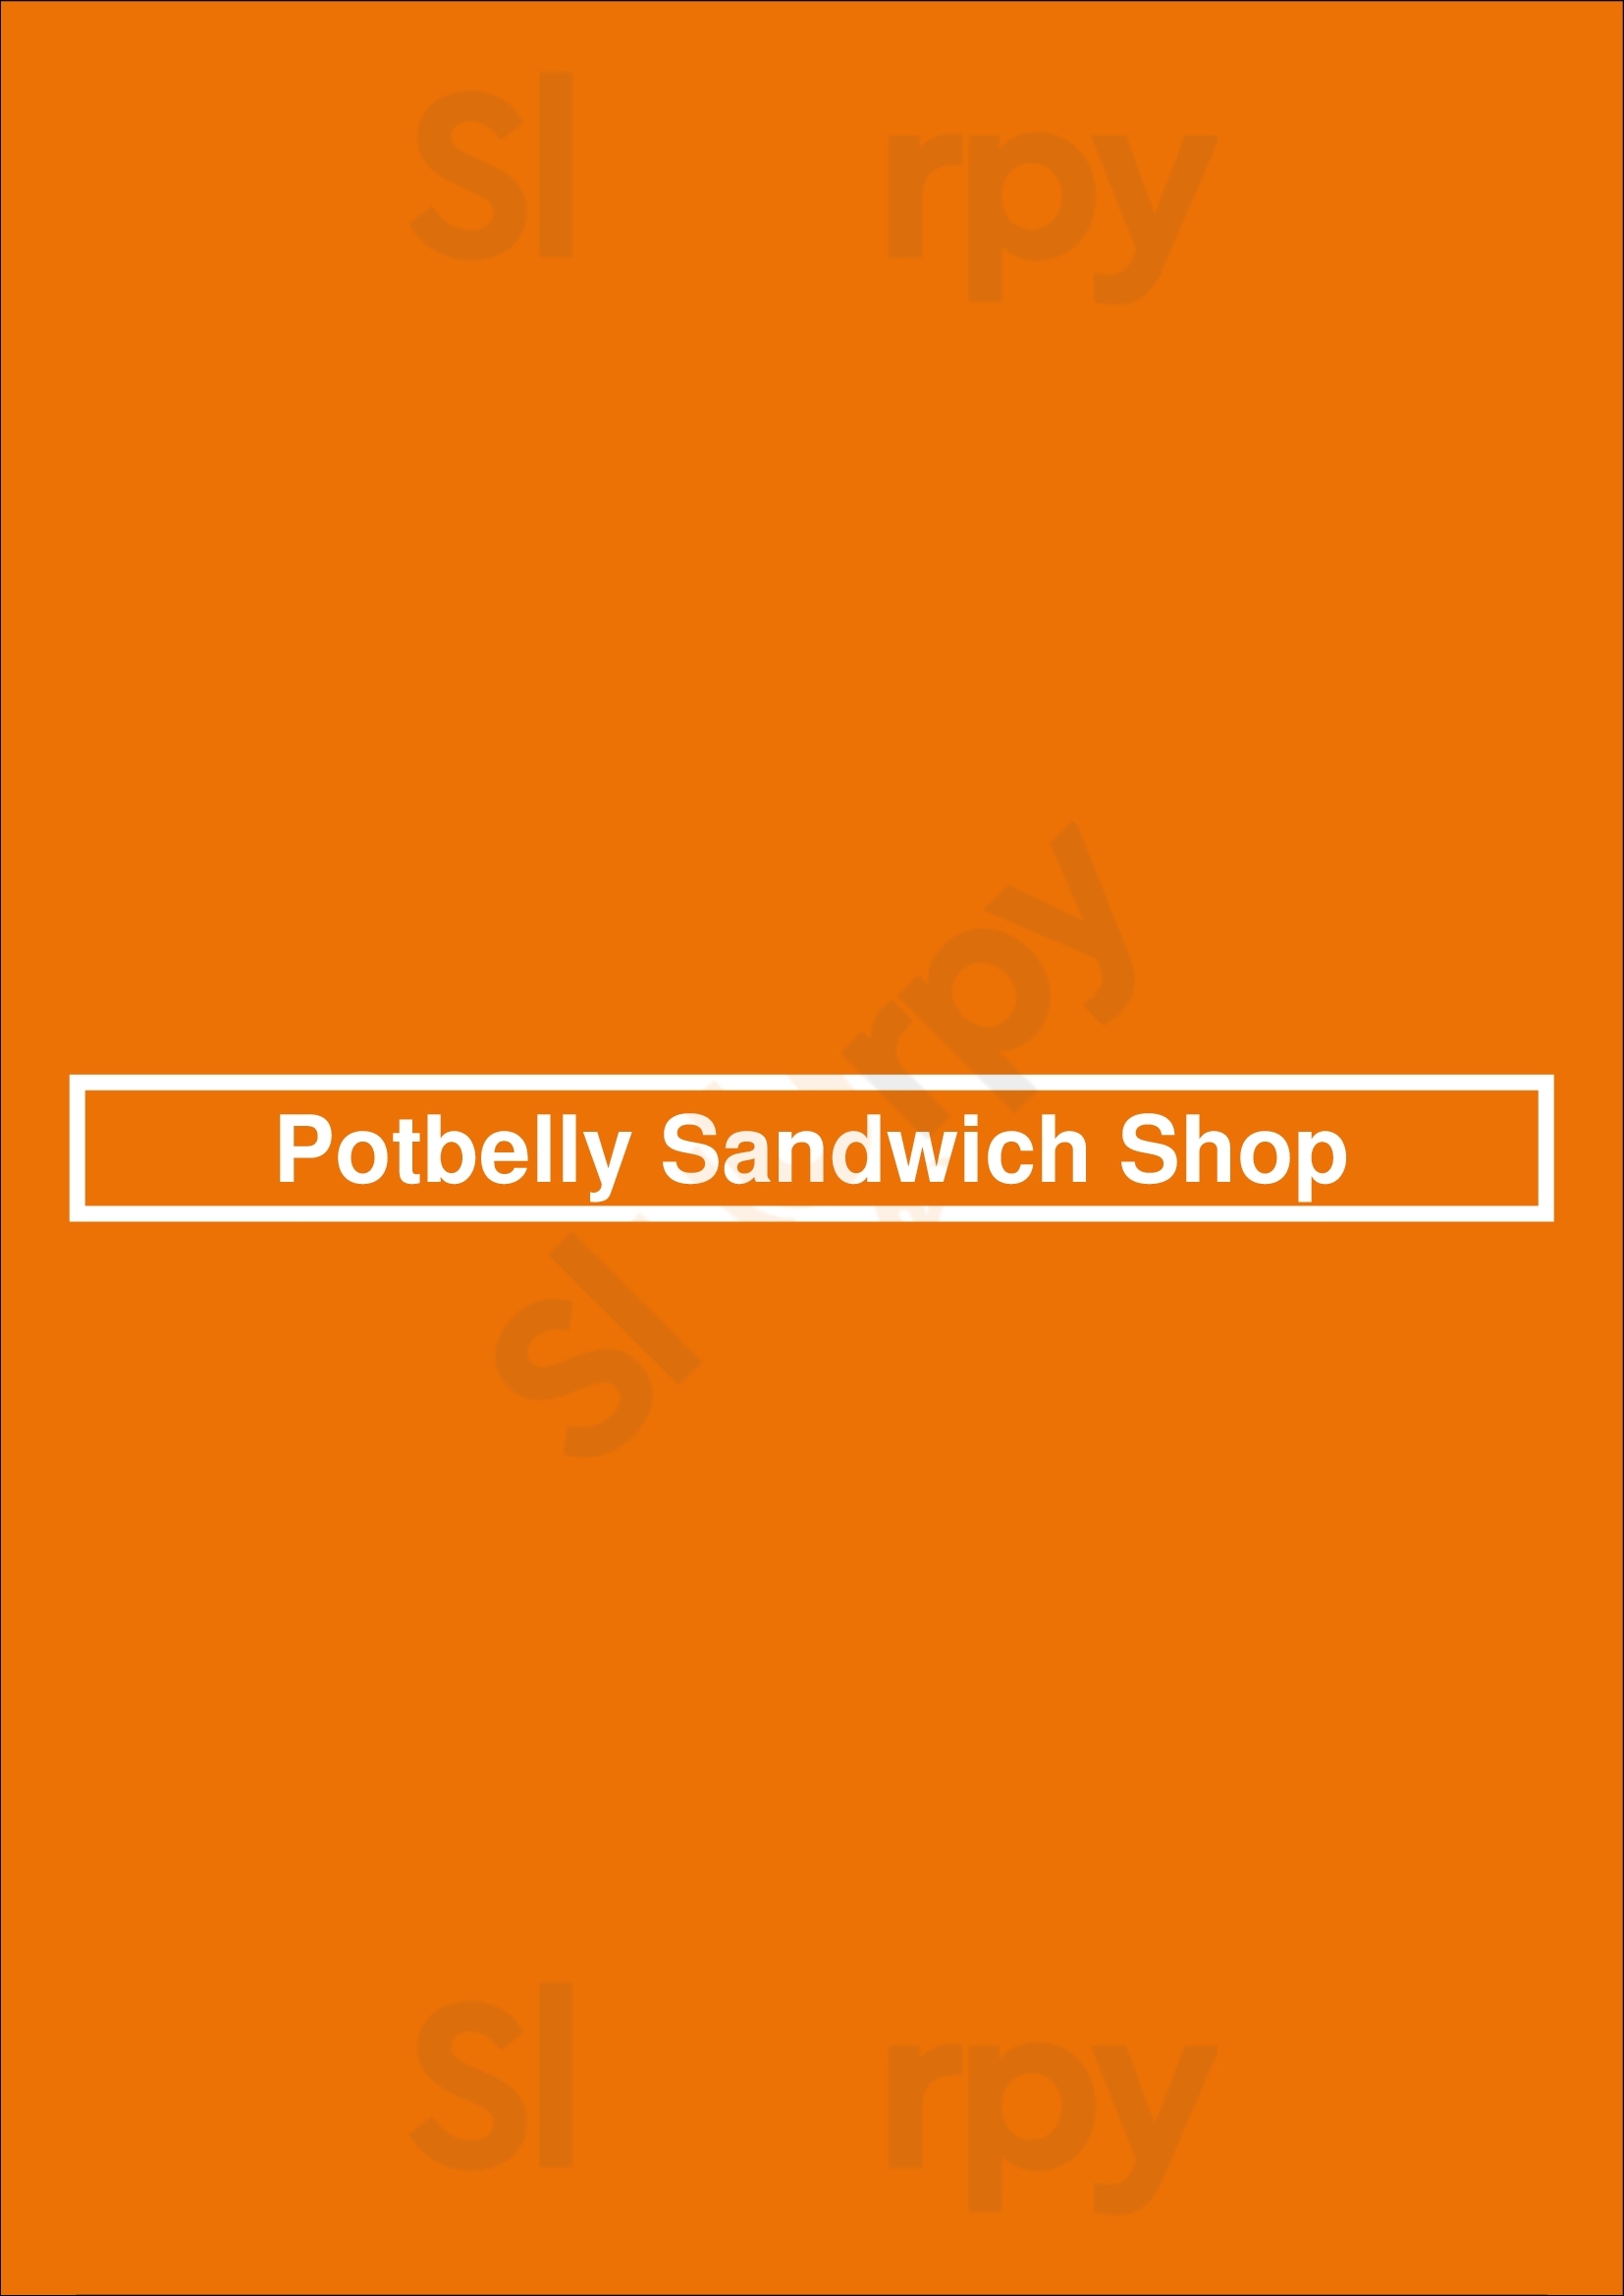 Potbelly Sandwich Shop Charlotte Menu - 1